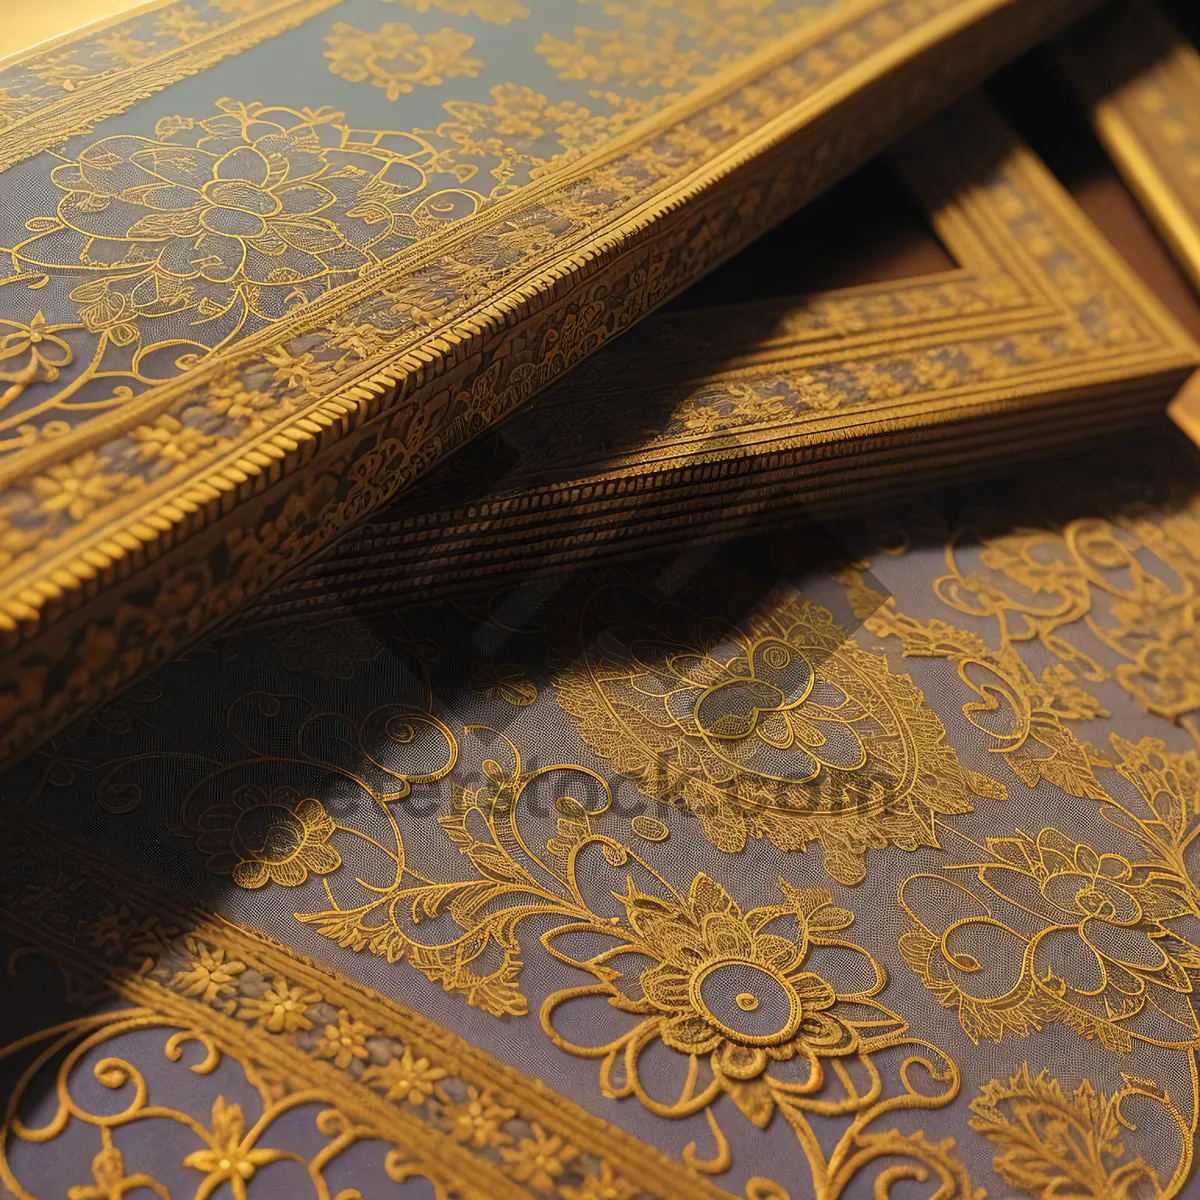 Picture of Elegant Arabesque Prayer Rug: Antique-Style Floor Cover